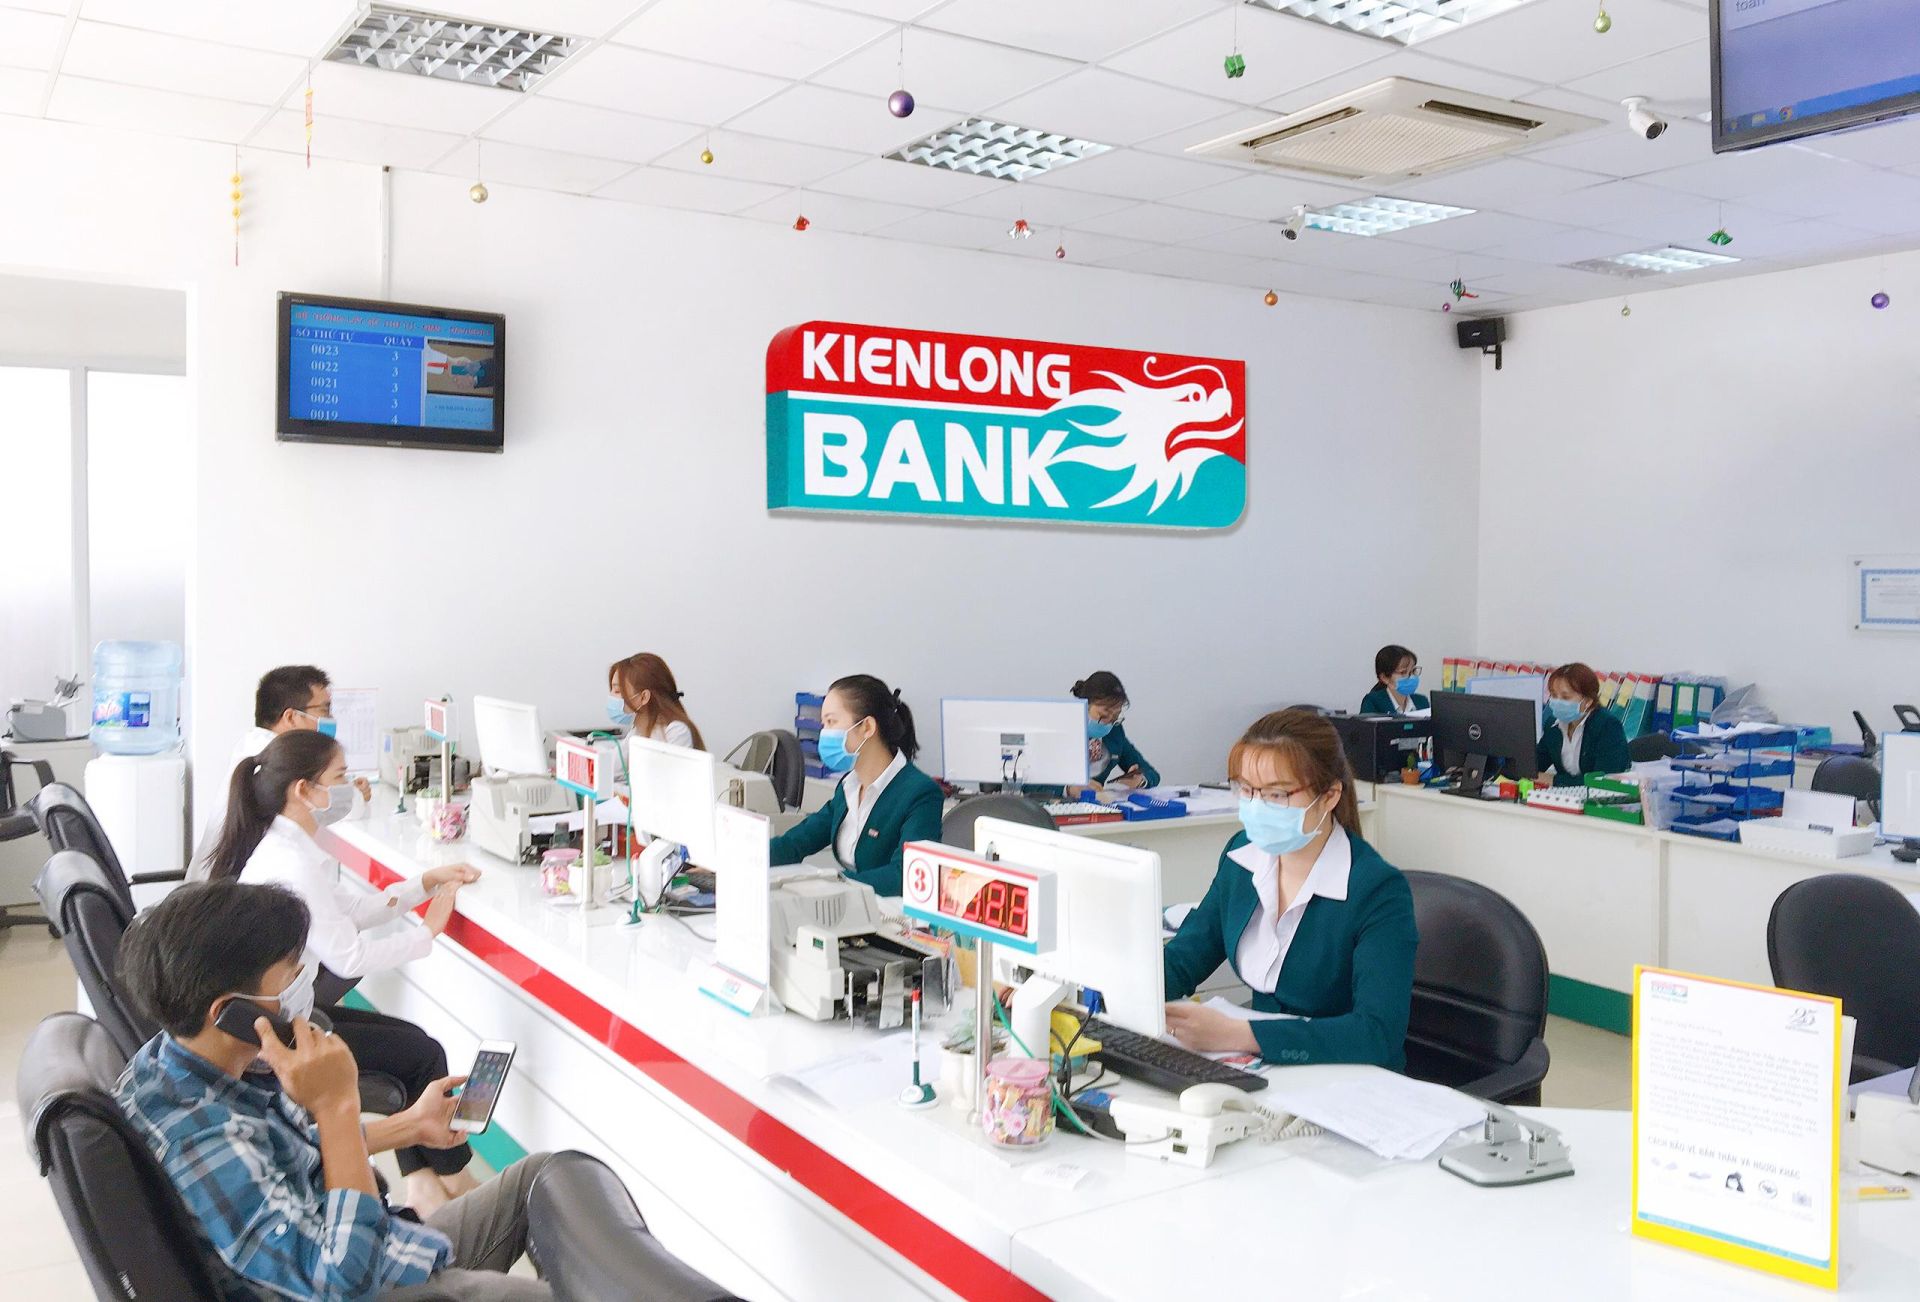 Chấp thuận cho KienlongBank nâng vốn điều lệ lên 4.231 tỉ đồng